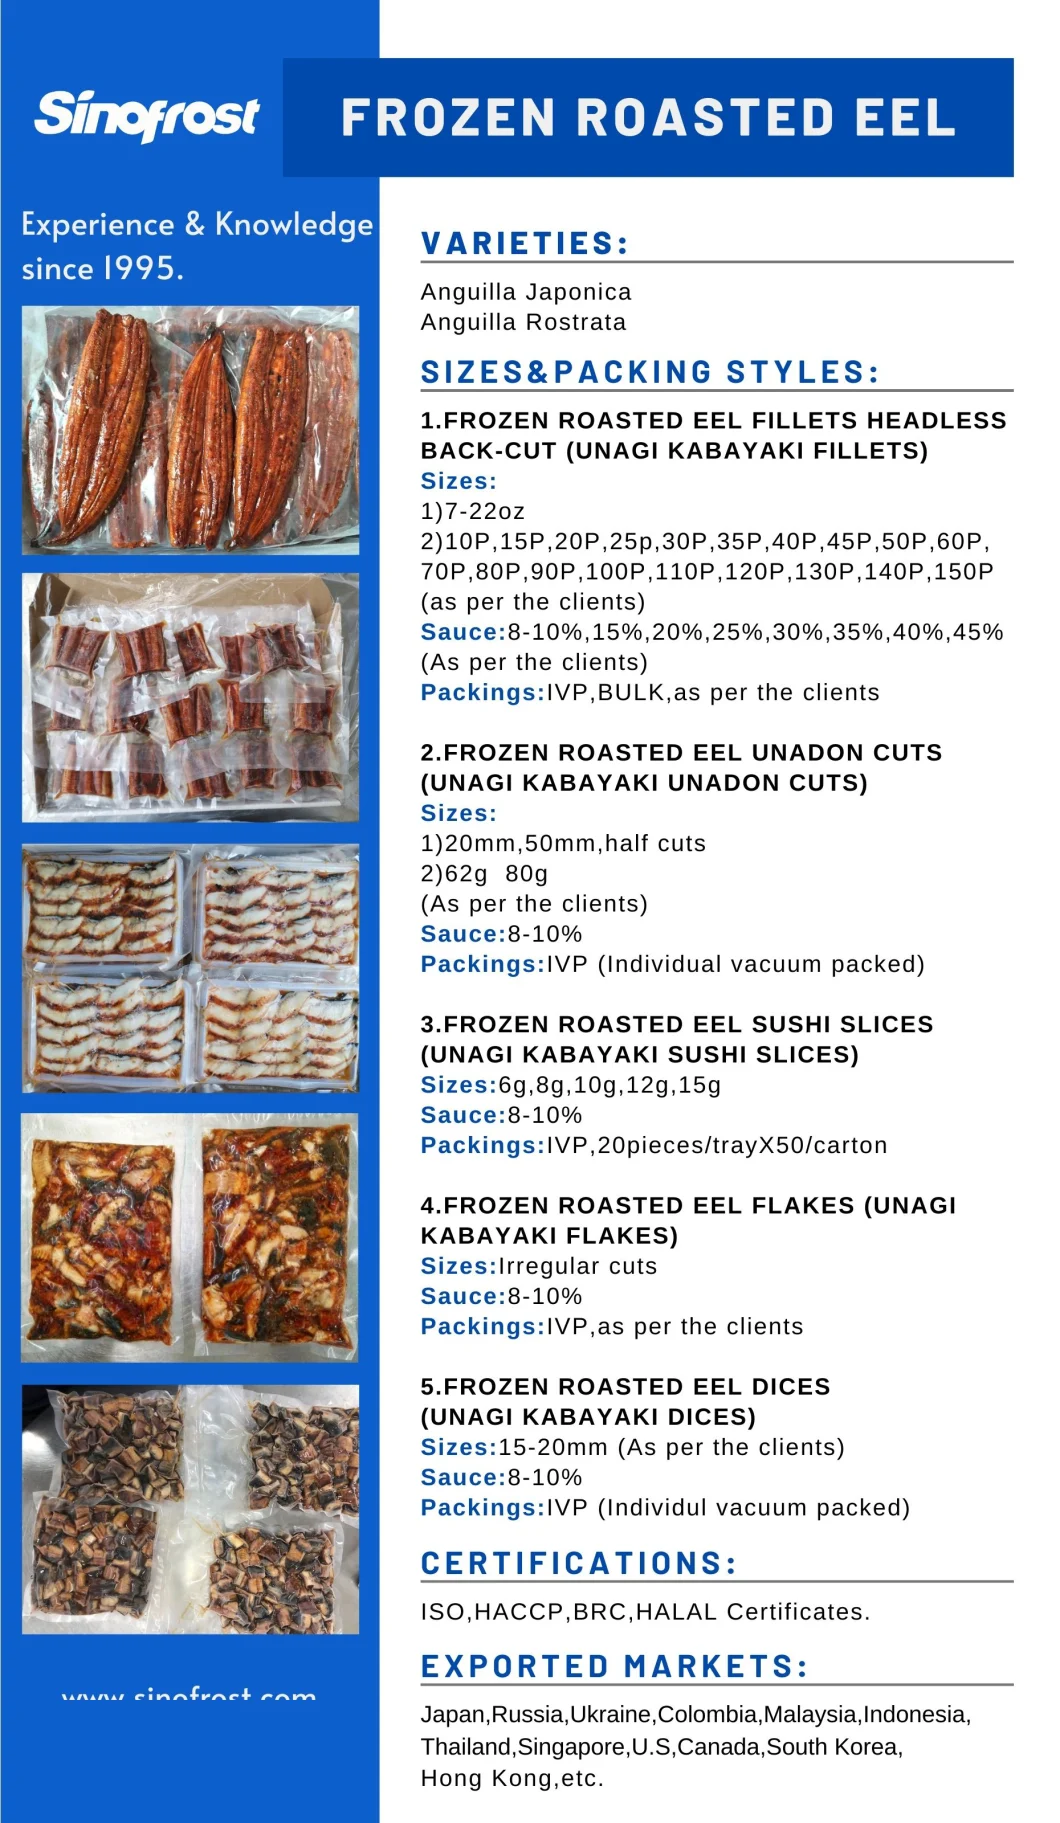 Frozen Broiled Eel,Frozen Prepared Eel,Frozen Roasted Eel,Frozen Grilled Eel,Frozen BBQ Eel,Frozen Smoked Eel,Unagi Kabayaki,Dices/Cuts/Slices/Flakes,Ivp/Bulk